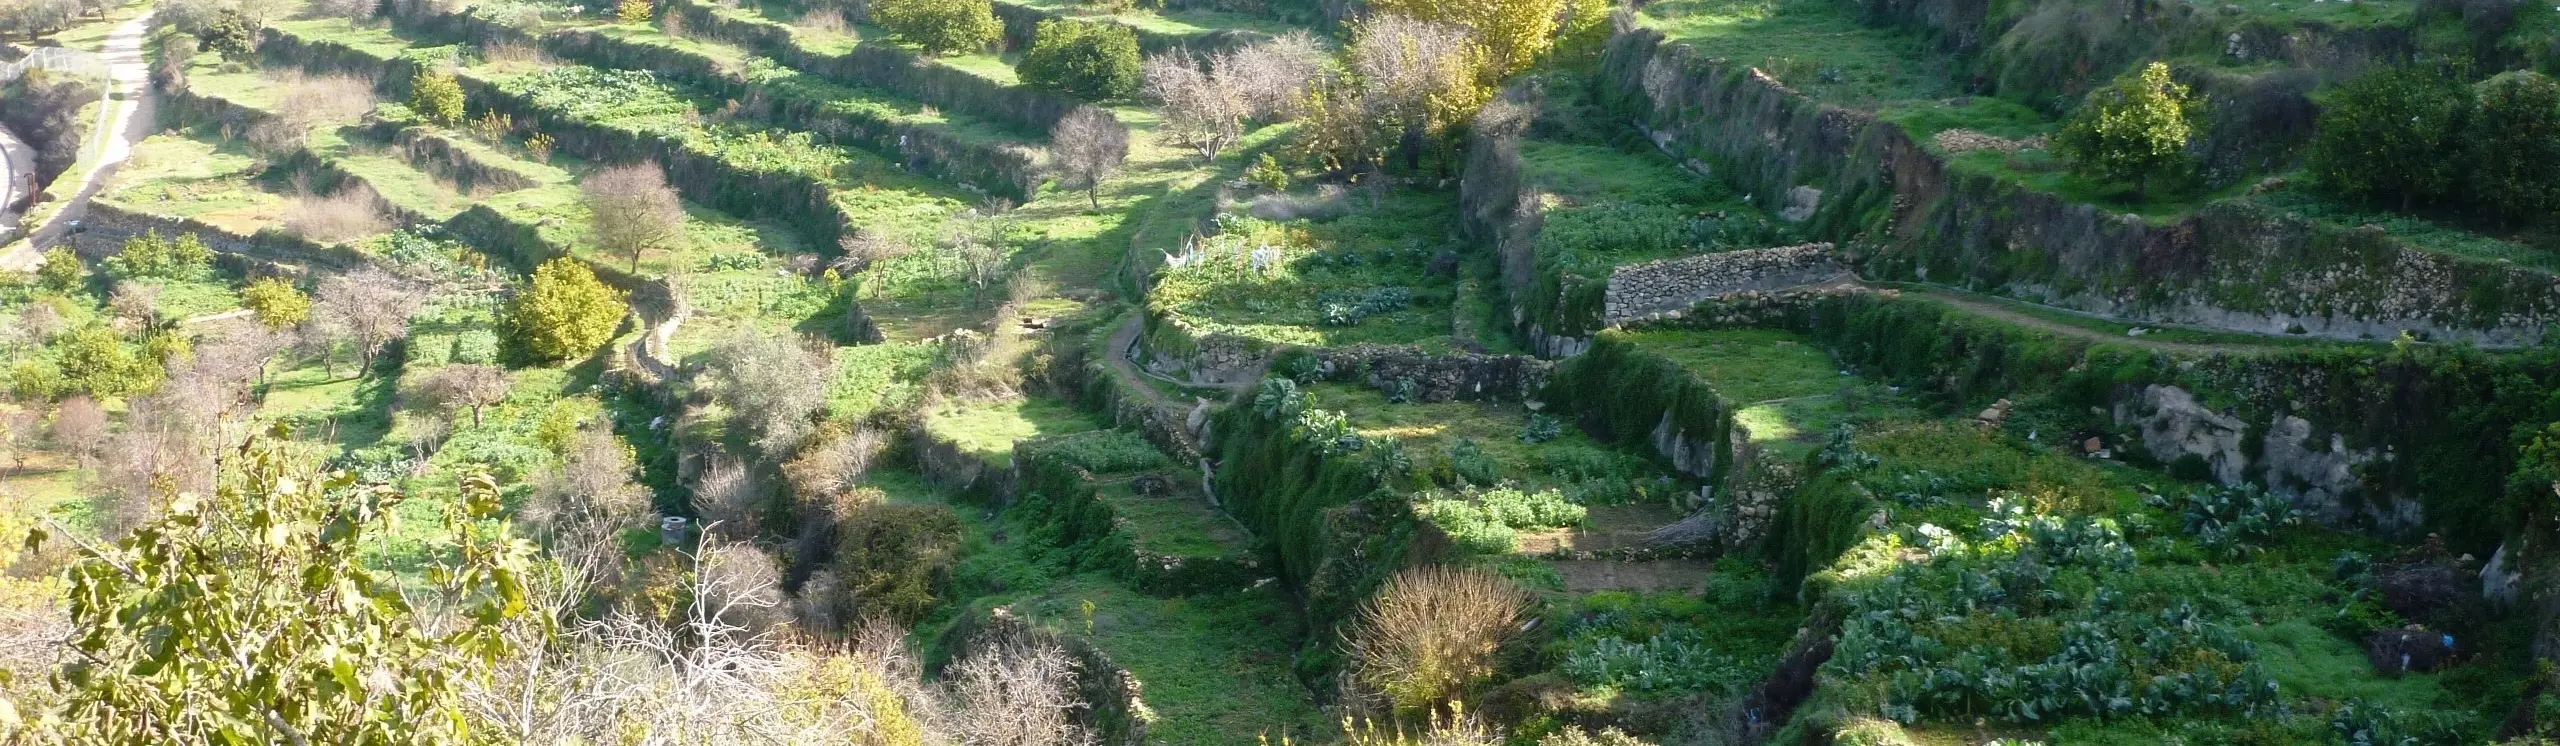 Palestine : terre des oliviers et des vignes – Paysage culturel du sud de Jérusalem, Battir